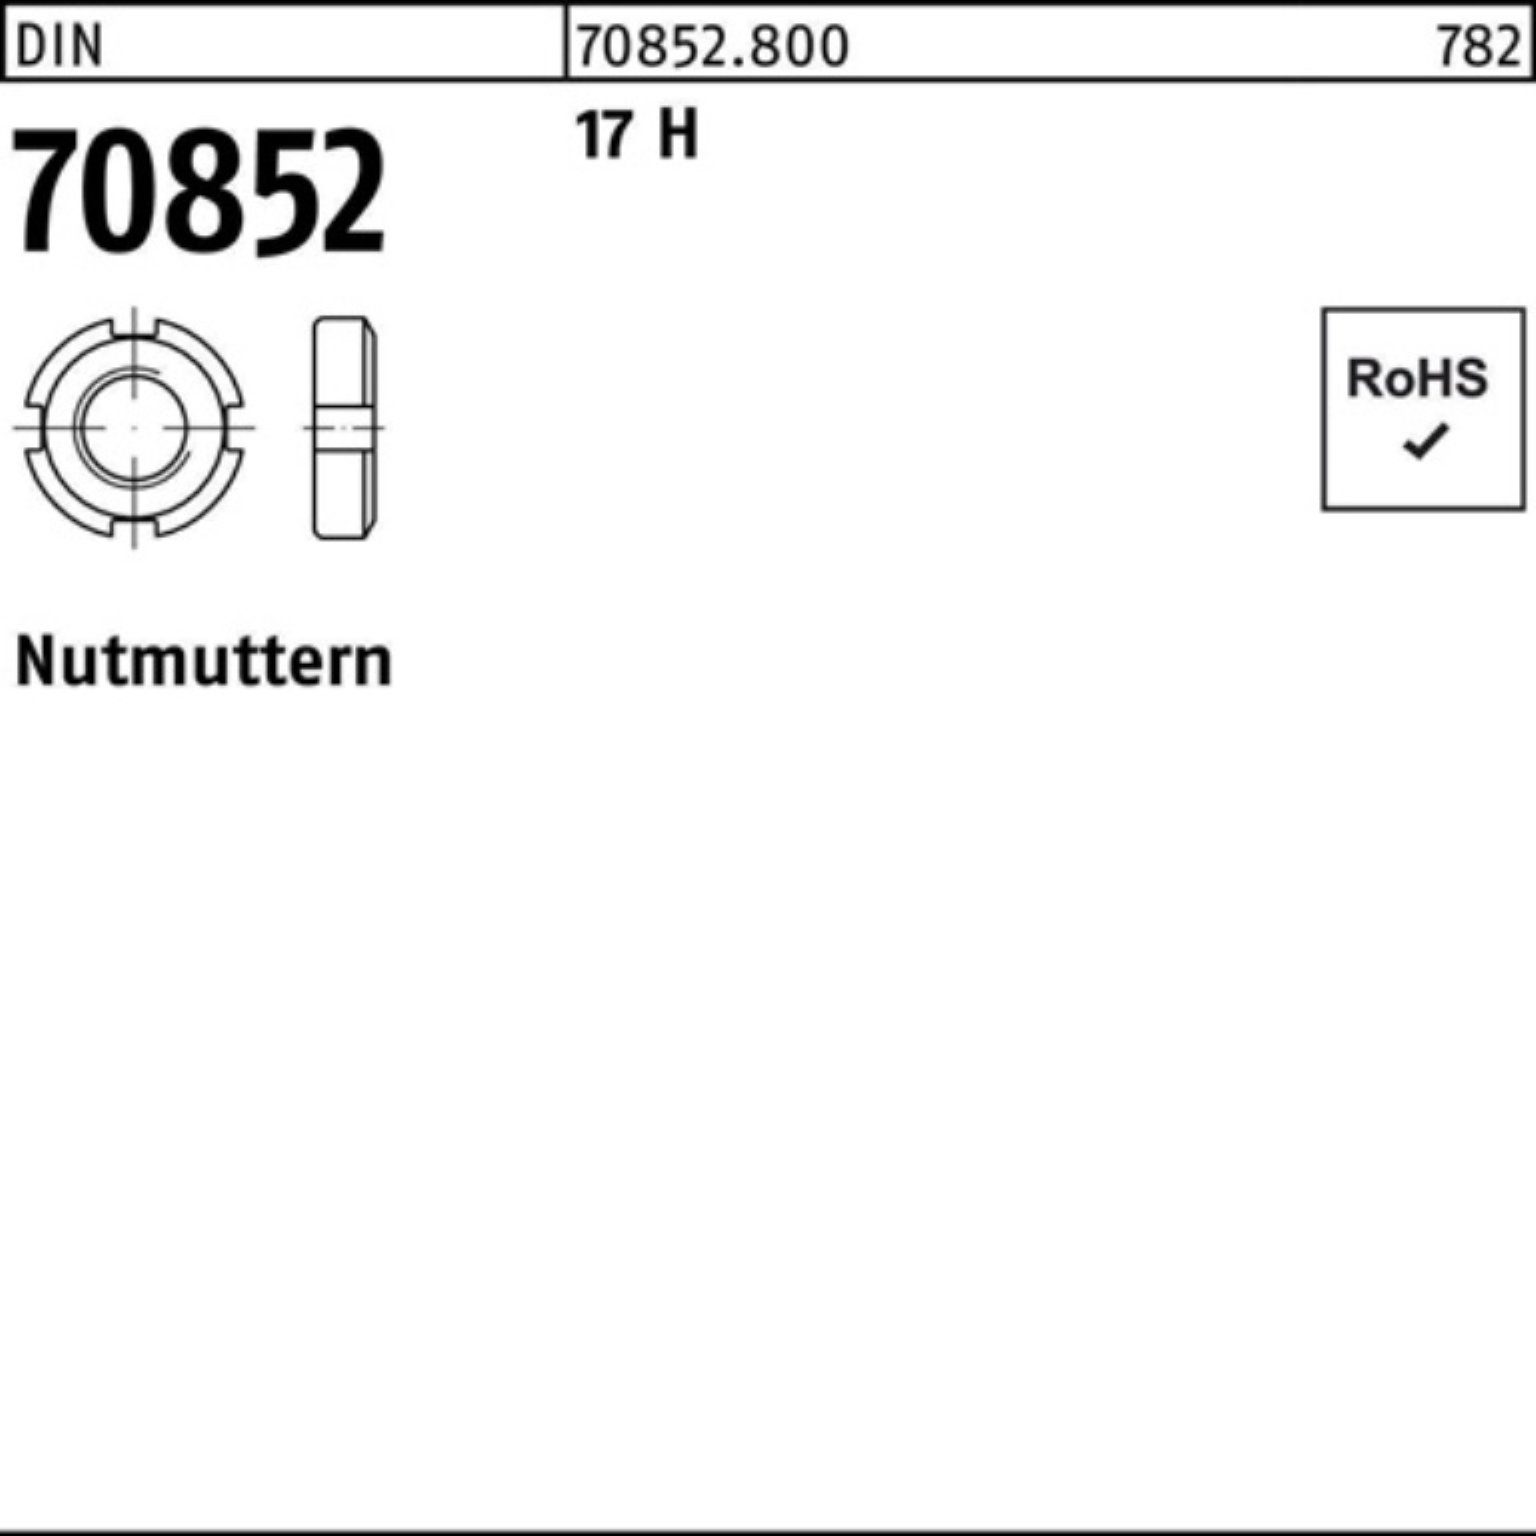 Reyher Nutmutter 100er Pack Nutmutter DIN 70852 M10x 1 17 H 25 Stück DIN 70852 17 H Nu